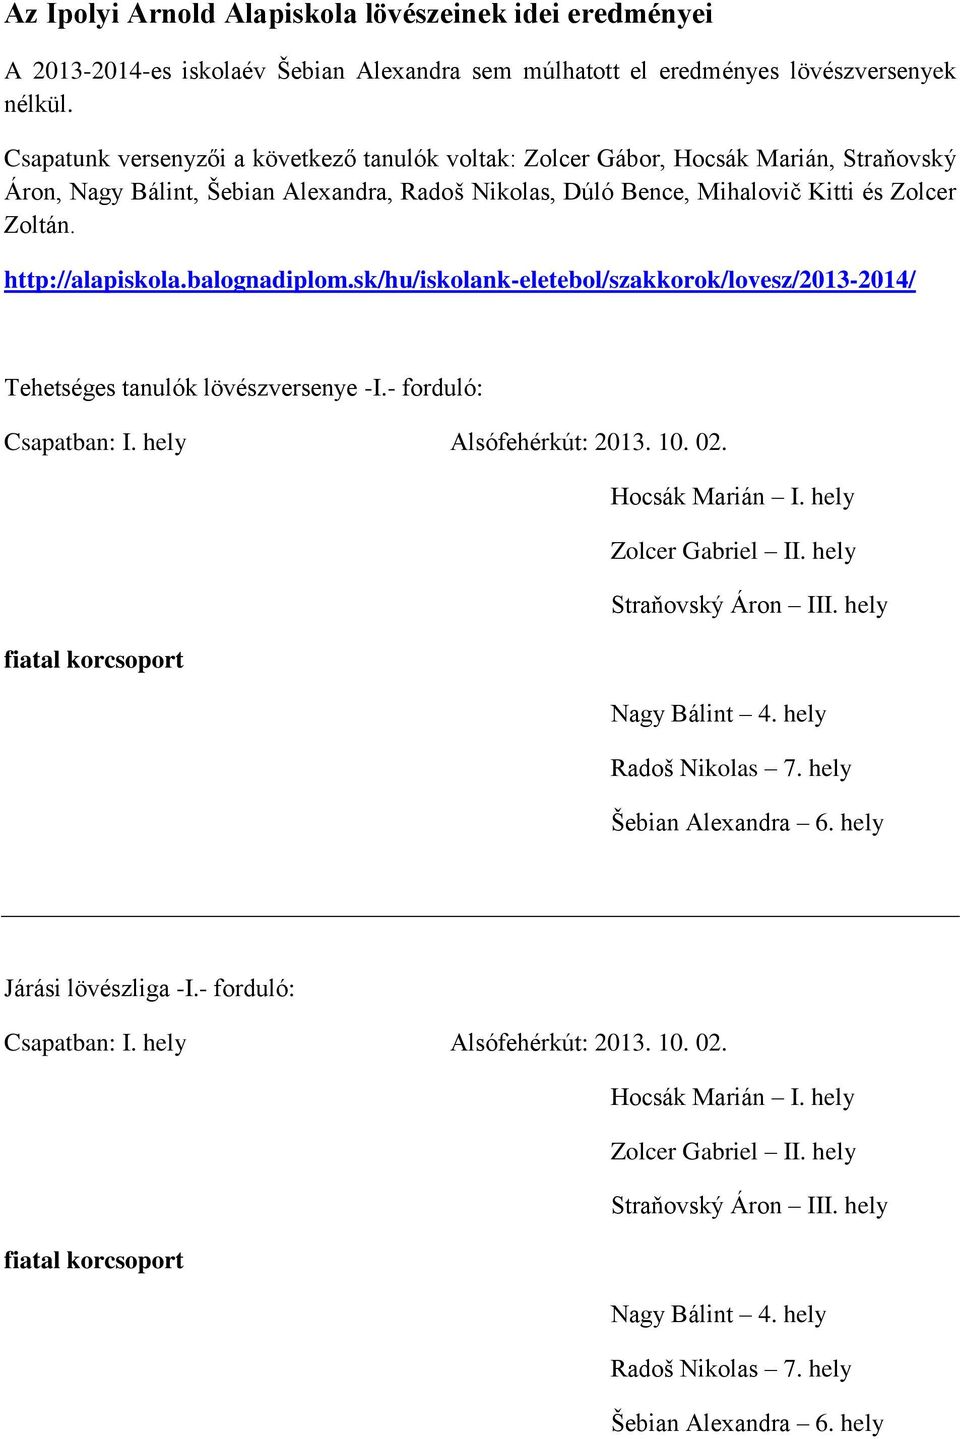 Az Ipolyi Arnold Alapiskola lövészeinek idei eredményei - PDF Free Download